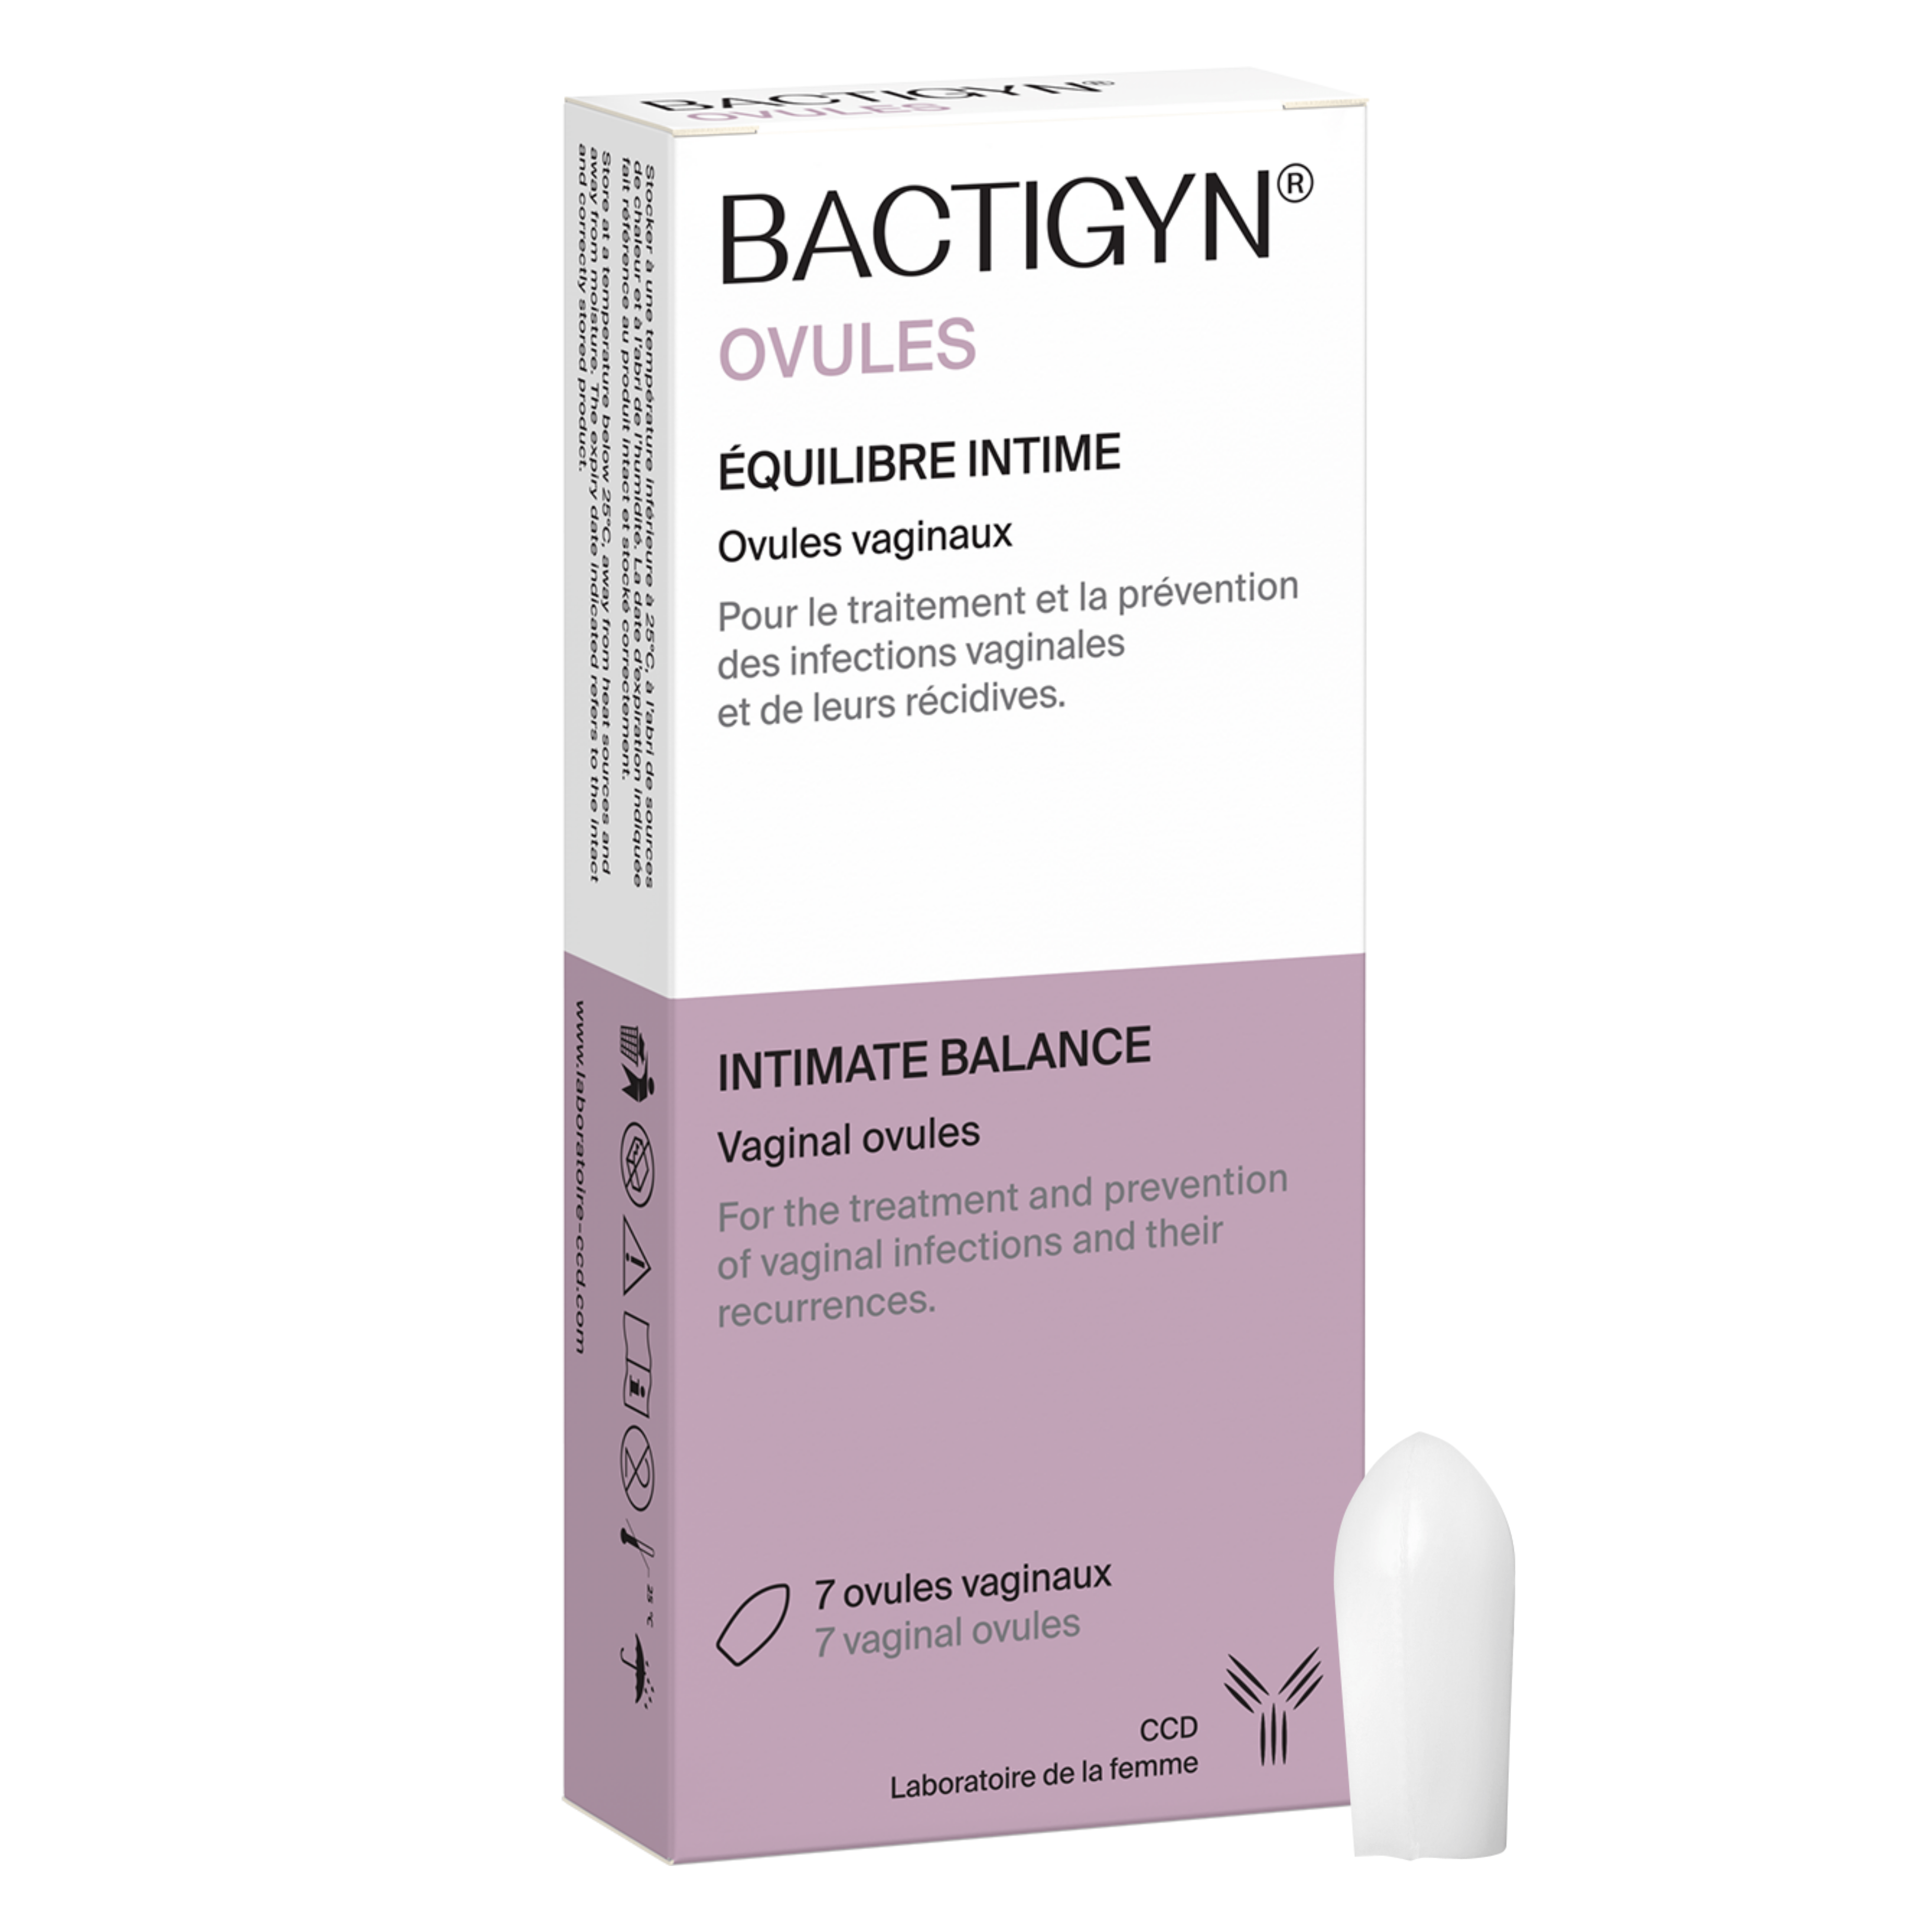 Bactigyn® Ovules